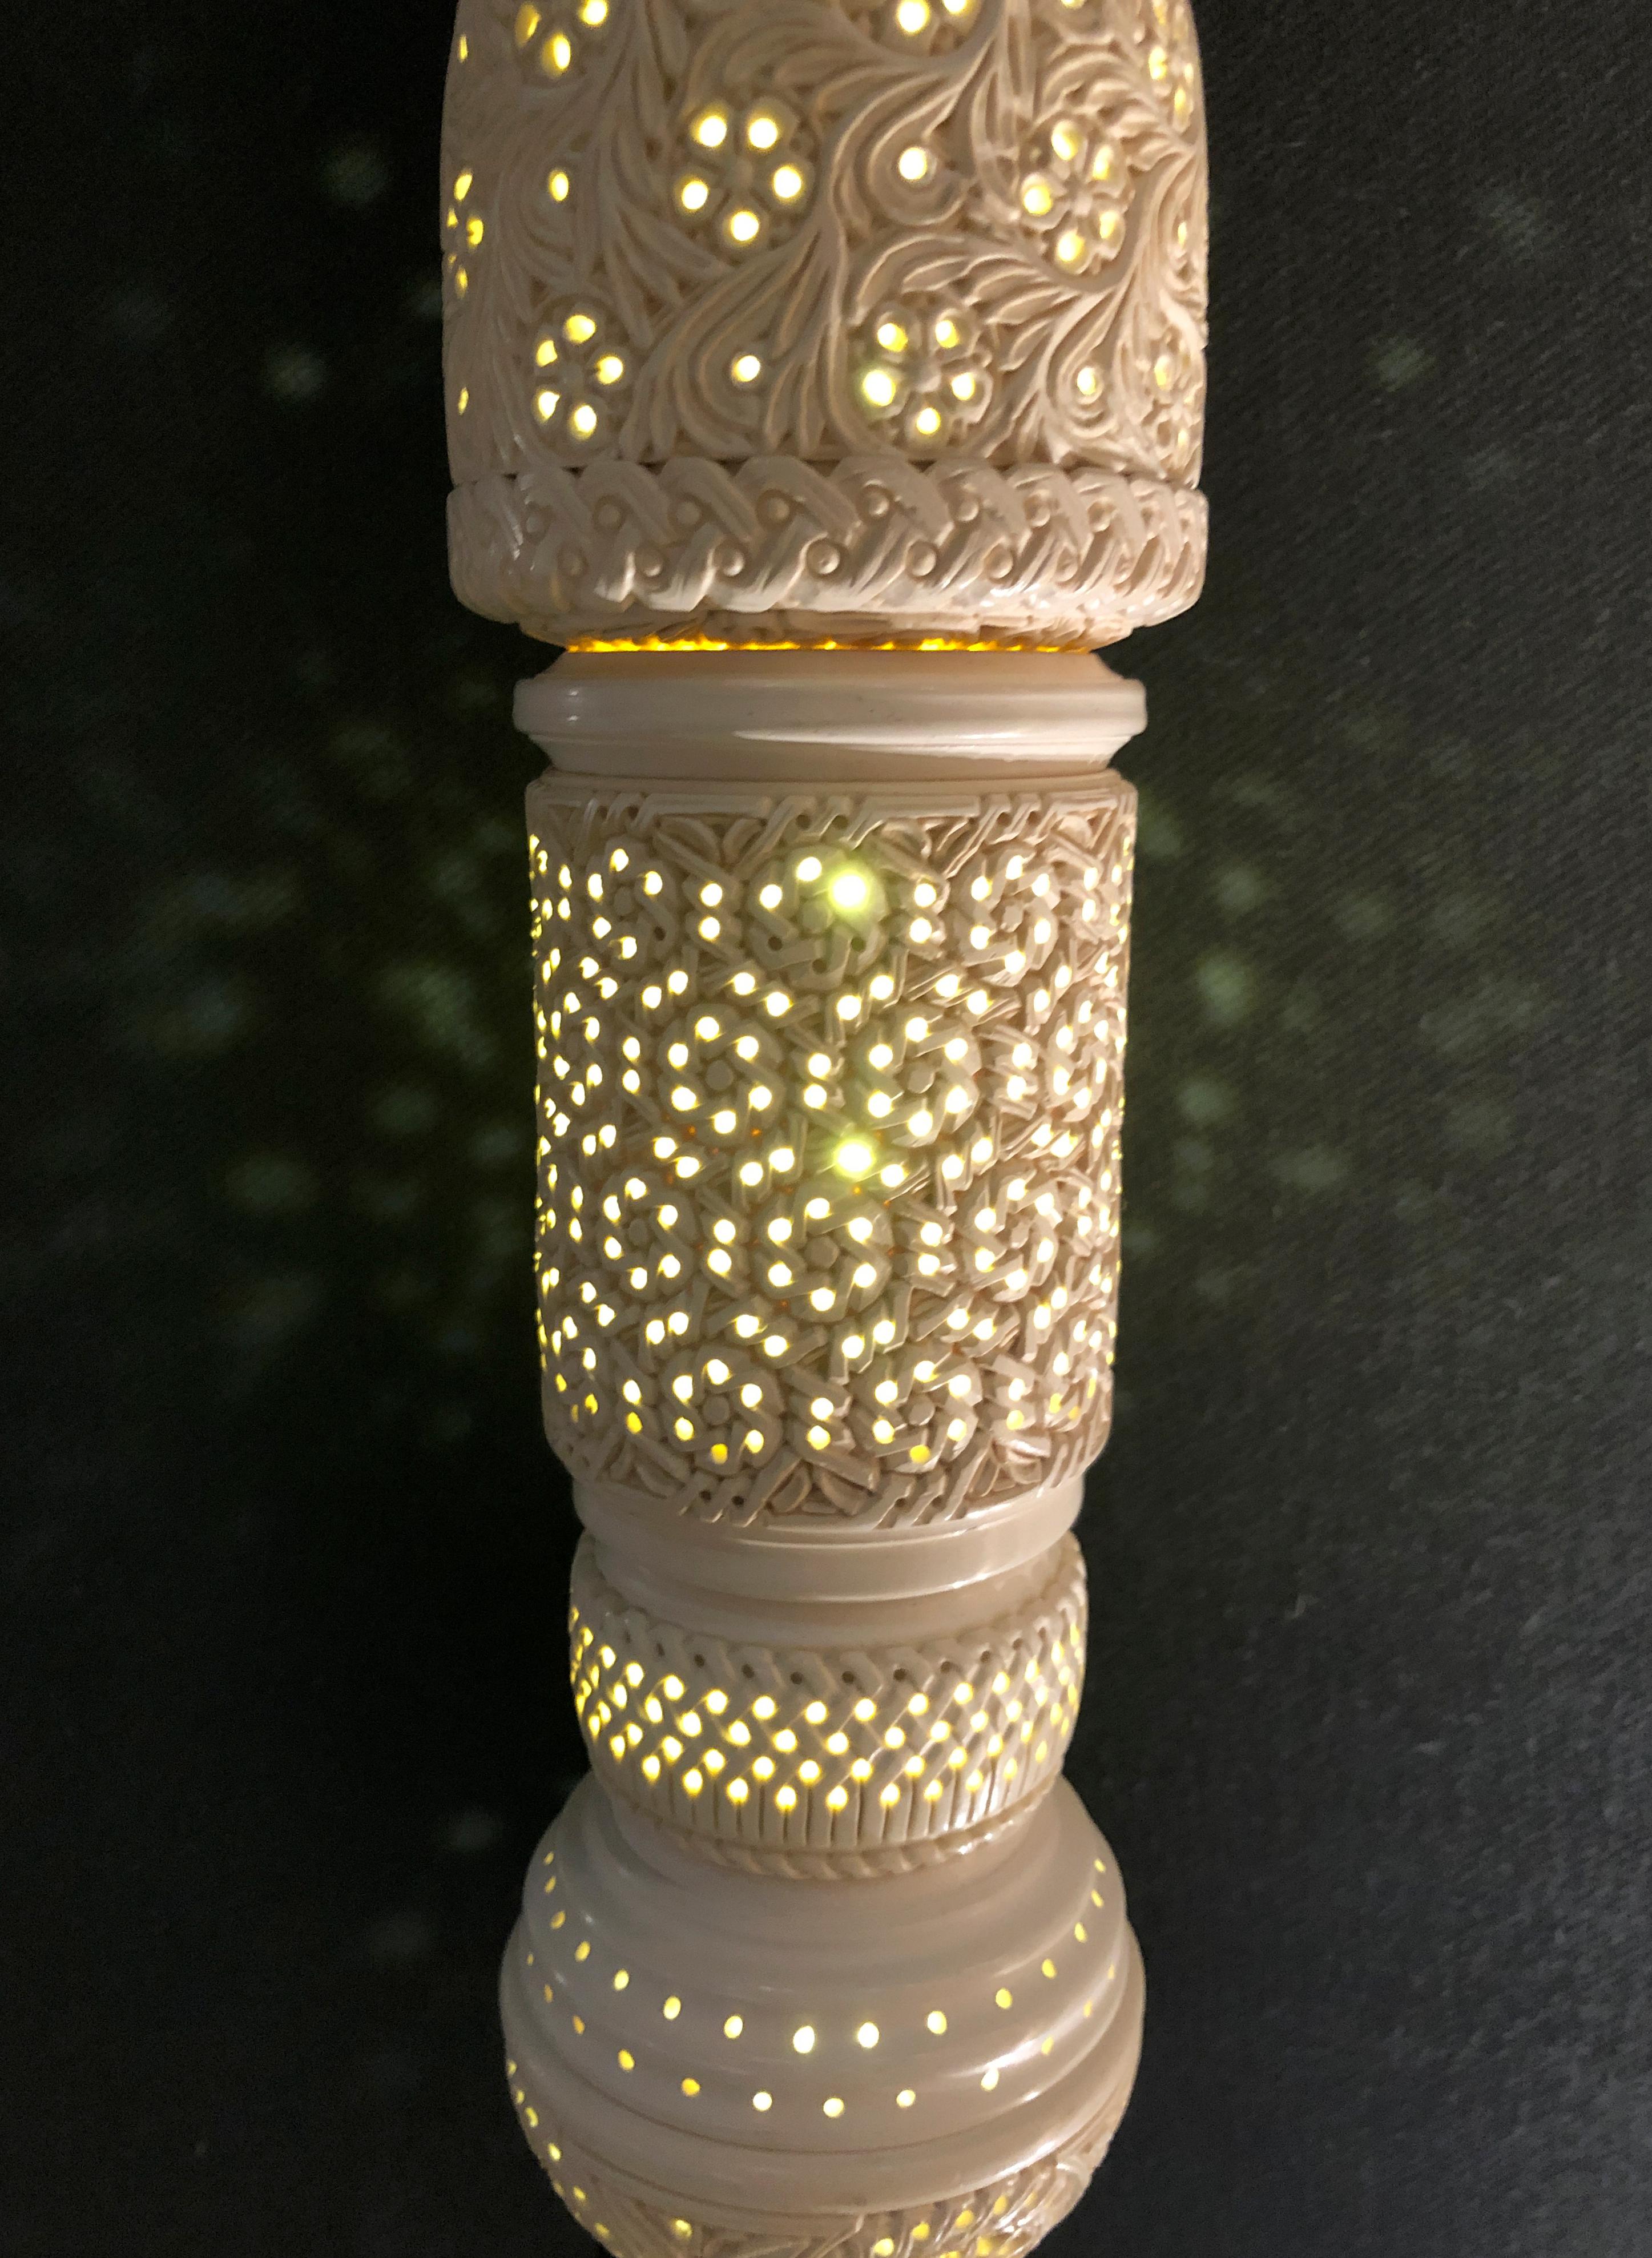 Feyza Kemahlioglu
Spitze Fan, 2019
Meershaum, Messing, Gussglas und LEDs
31 x 14 x 7,5 Zoll

Entworfen von Feyza Kemahlioglu von FEYZ Studio. Meerschaum ist ein weiches, weißes Tonmineral aus der Türkei, das häufig zur Herstellung von Tabakpfeifen